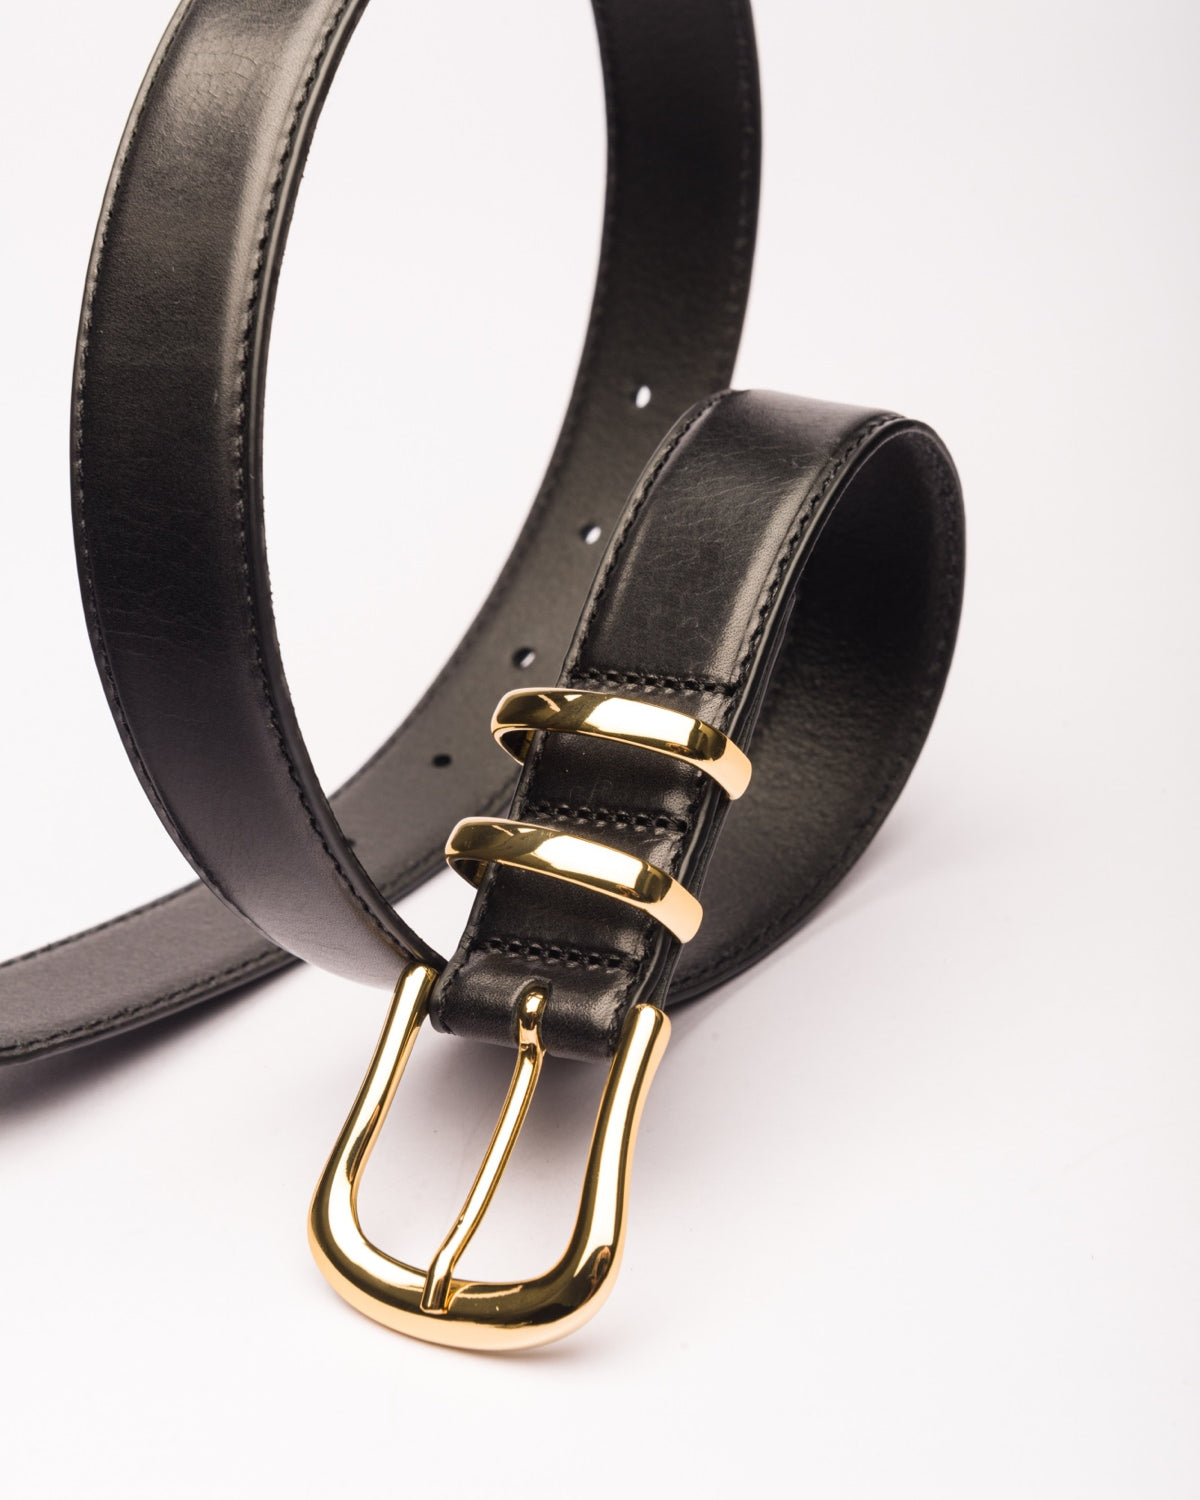 Marina II slim black leather waist belt